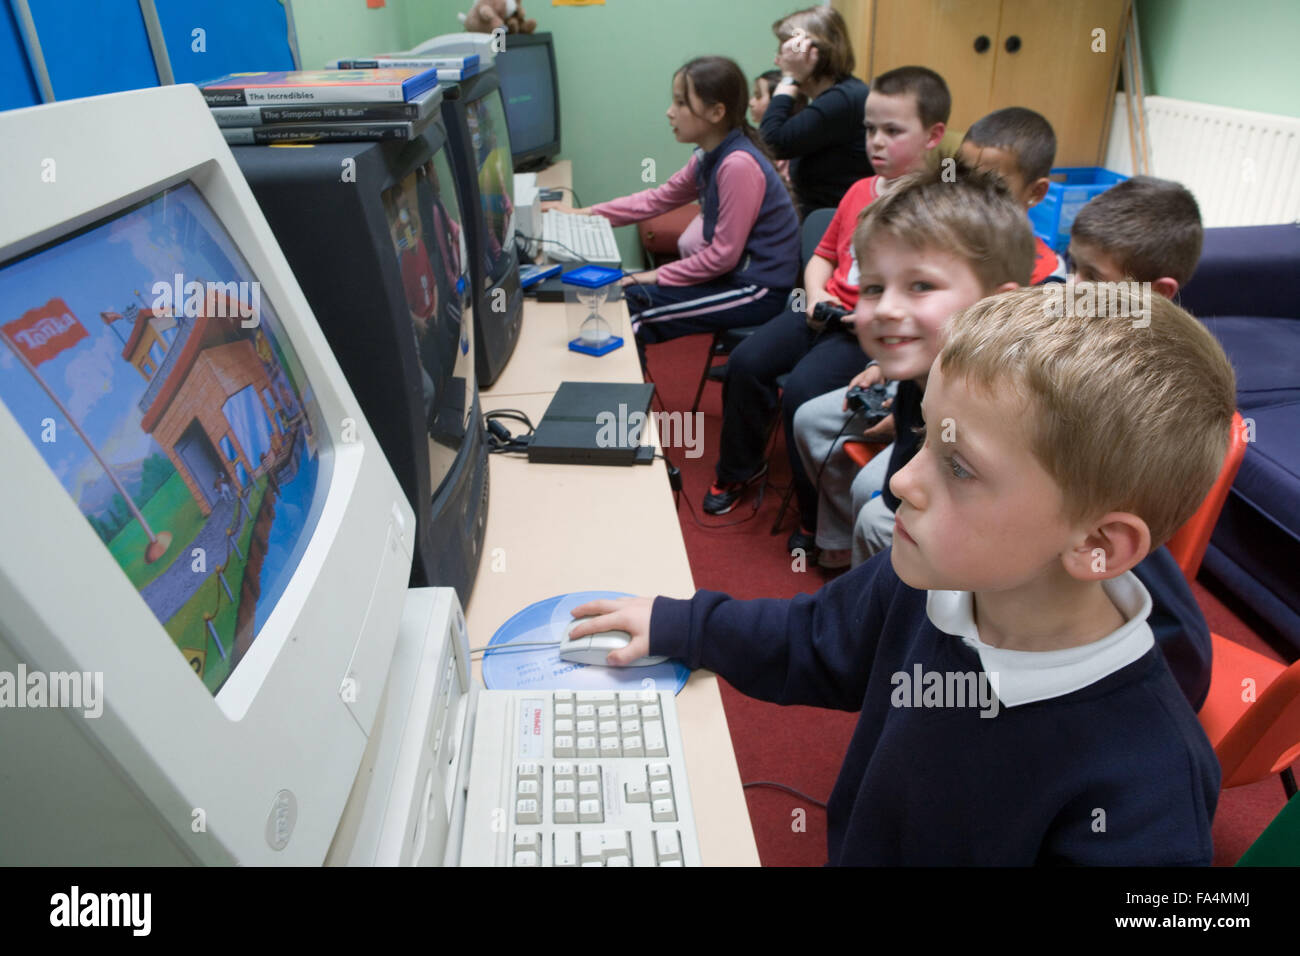 Un Grupo De Niños De Escuela Primaria Utilizando Las Computadoras En El